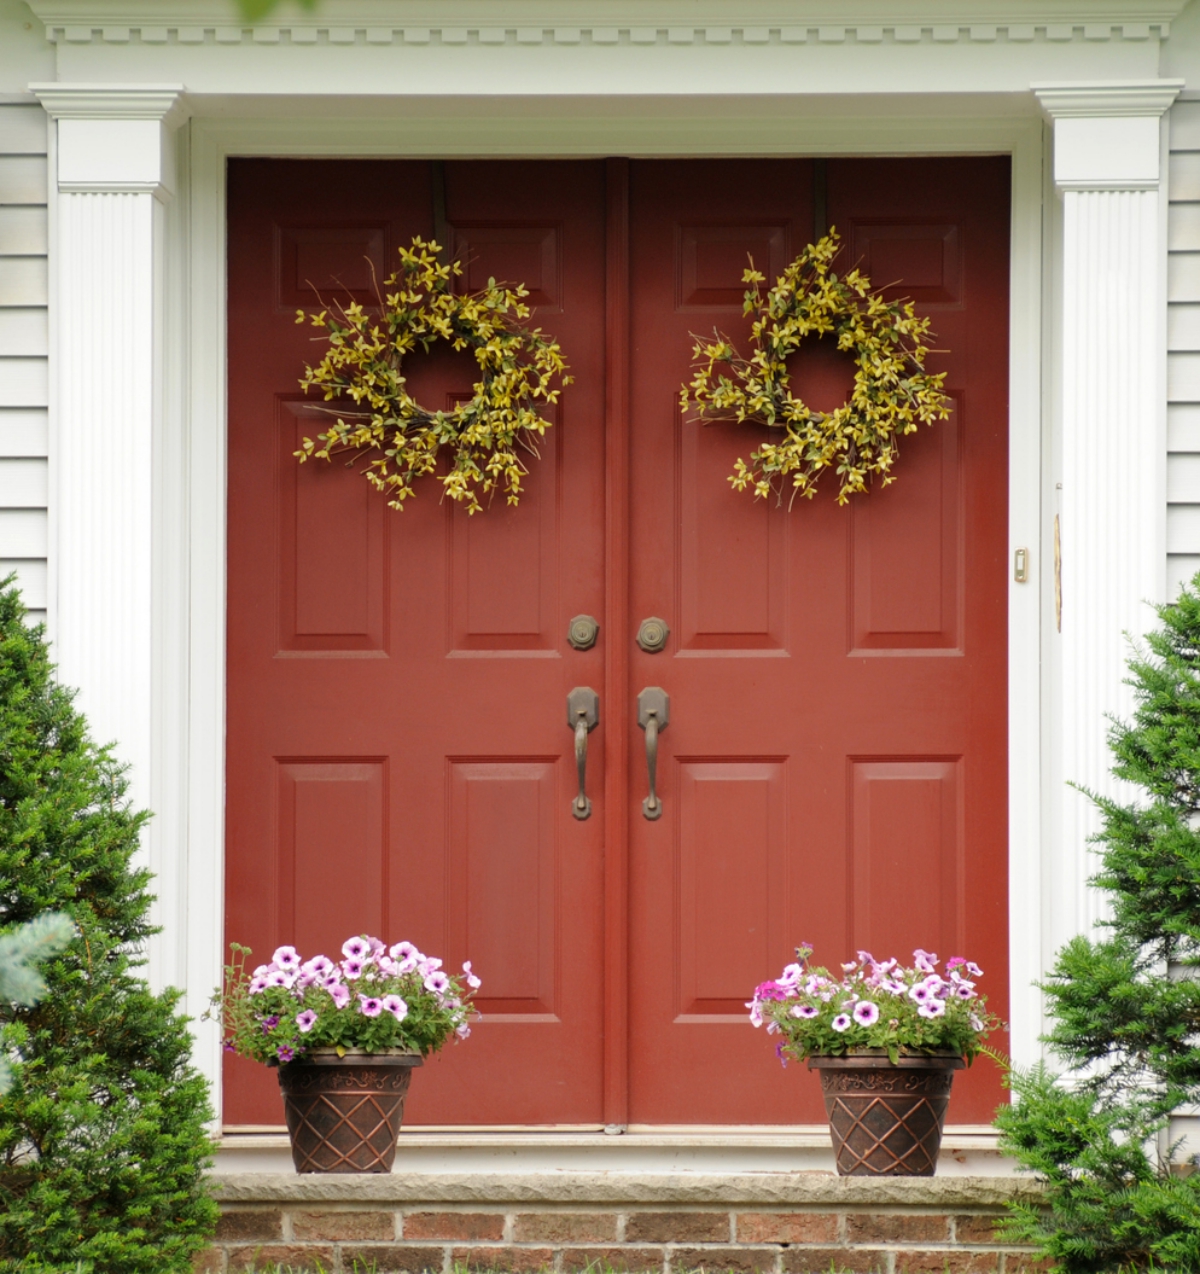 zwei Türkränze und zwei Topfpflanzen als Schmuck vor der Tür